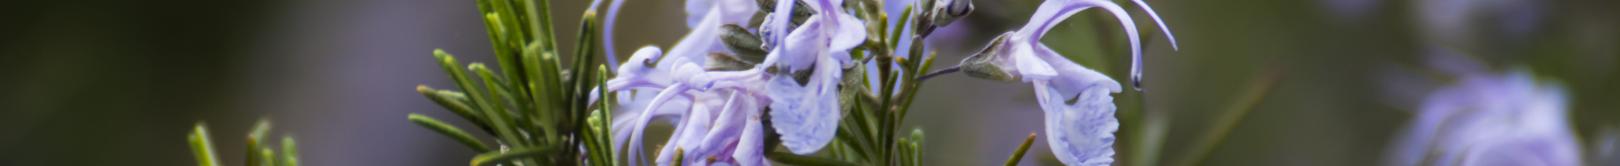 rosmarino in fiore (foto C.Mascia)